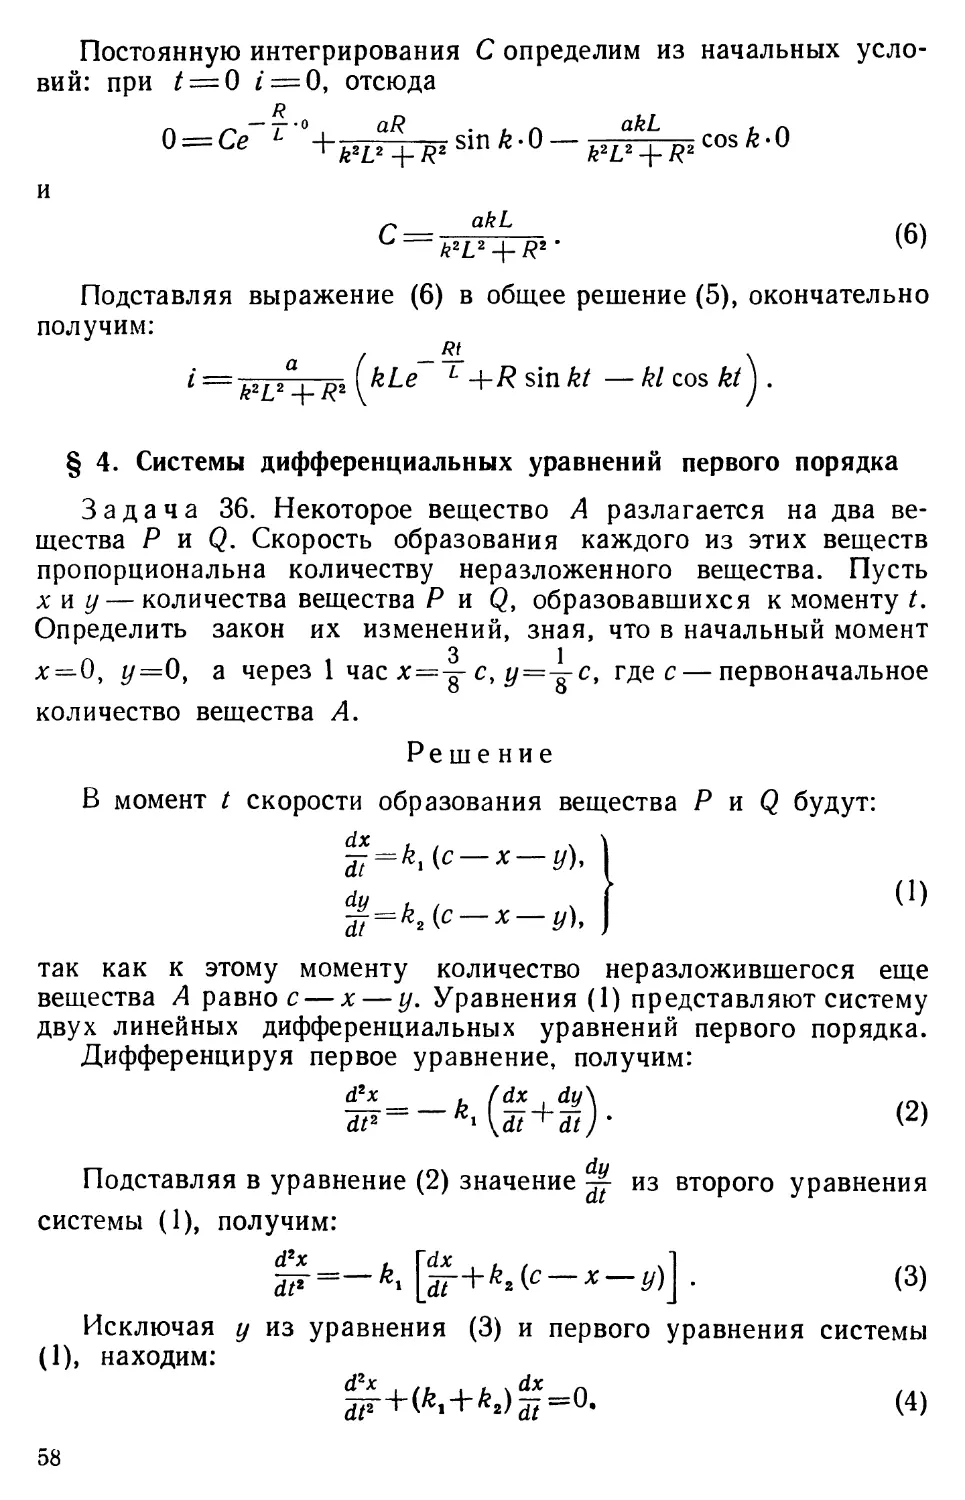 § 4. Системы дифференциальных уравнений первого порядка